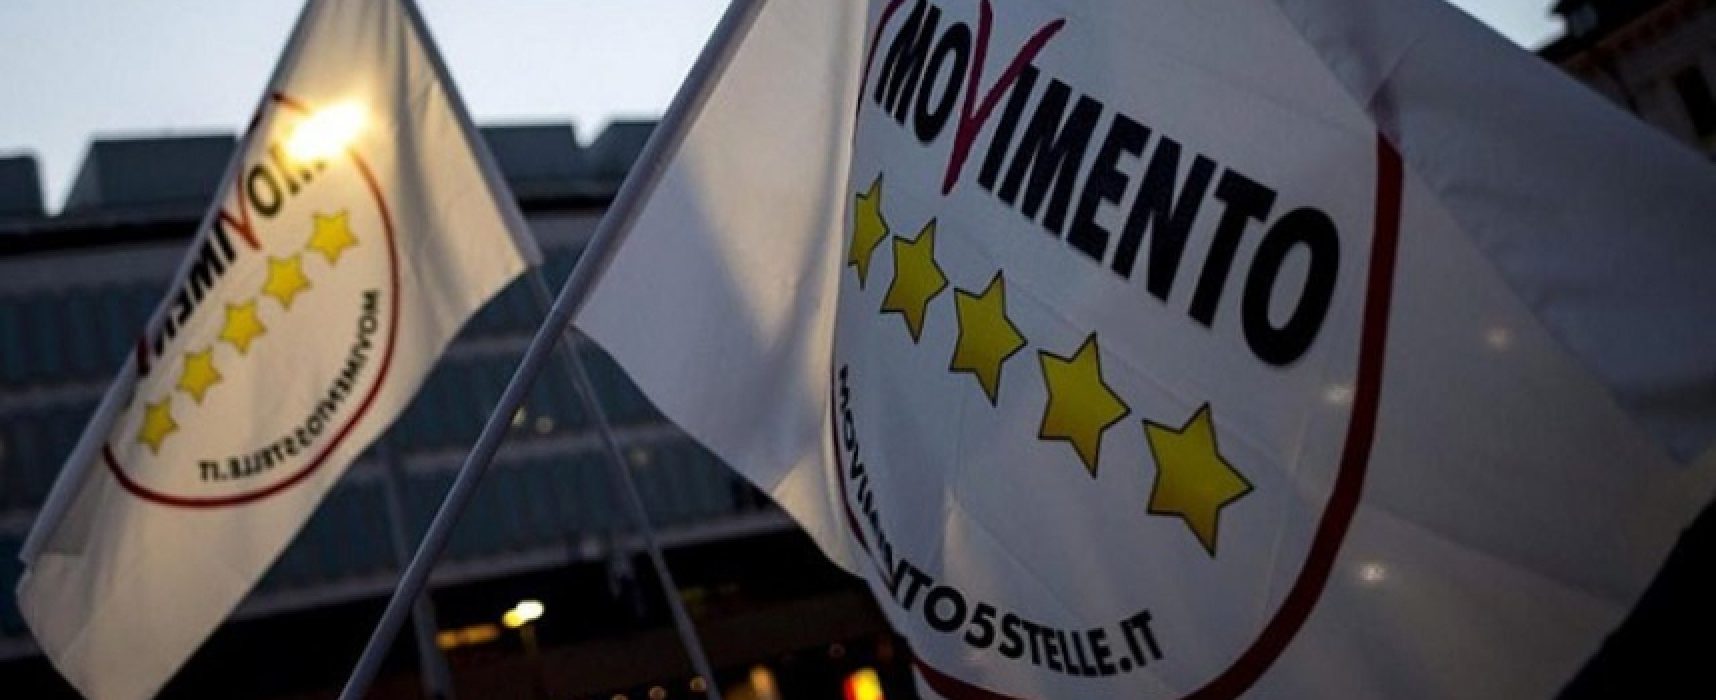 Movimento 5 Stelle Bisceglie: “Fedeli a principi fondanti, a Bari possono dire lo stesso?”